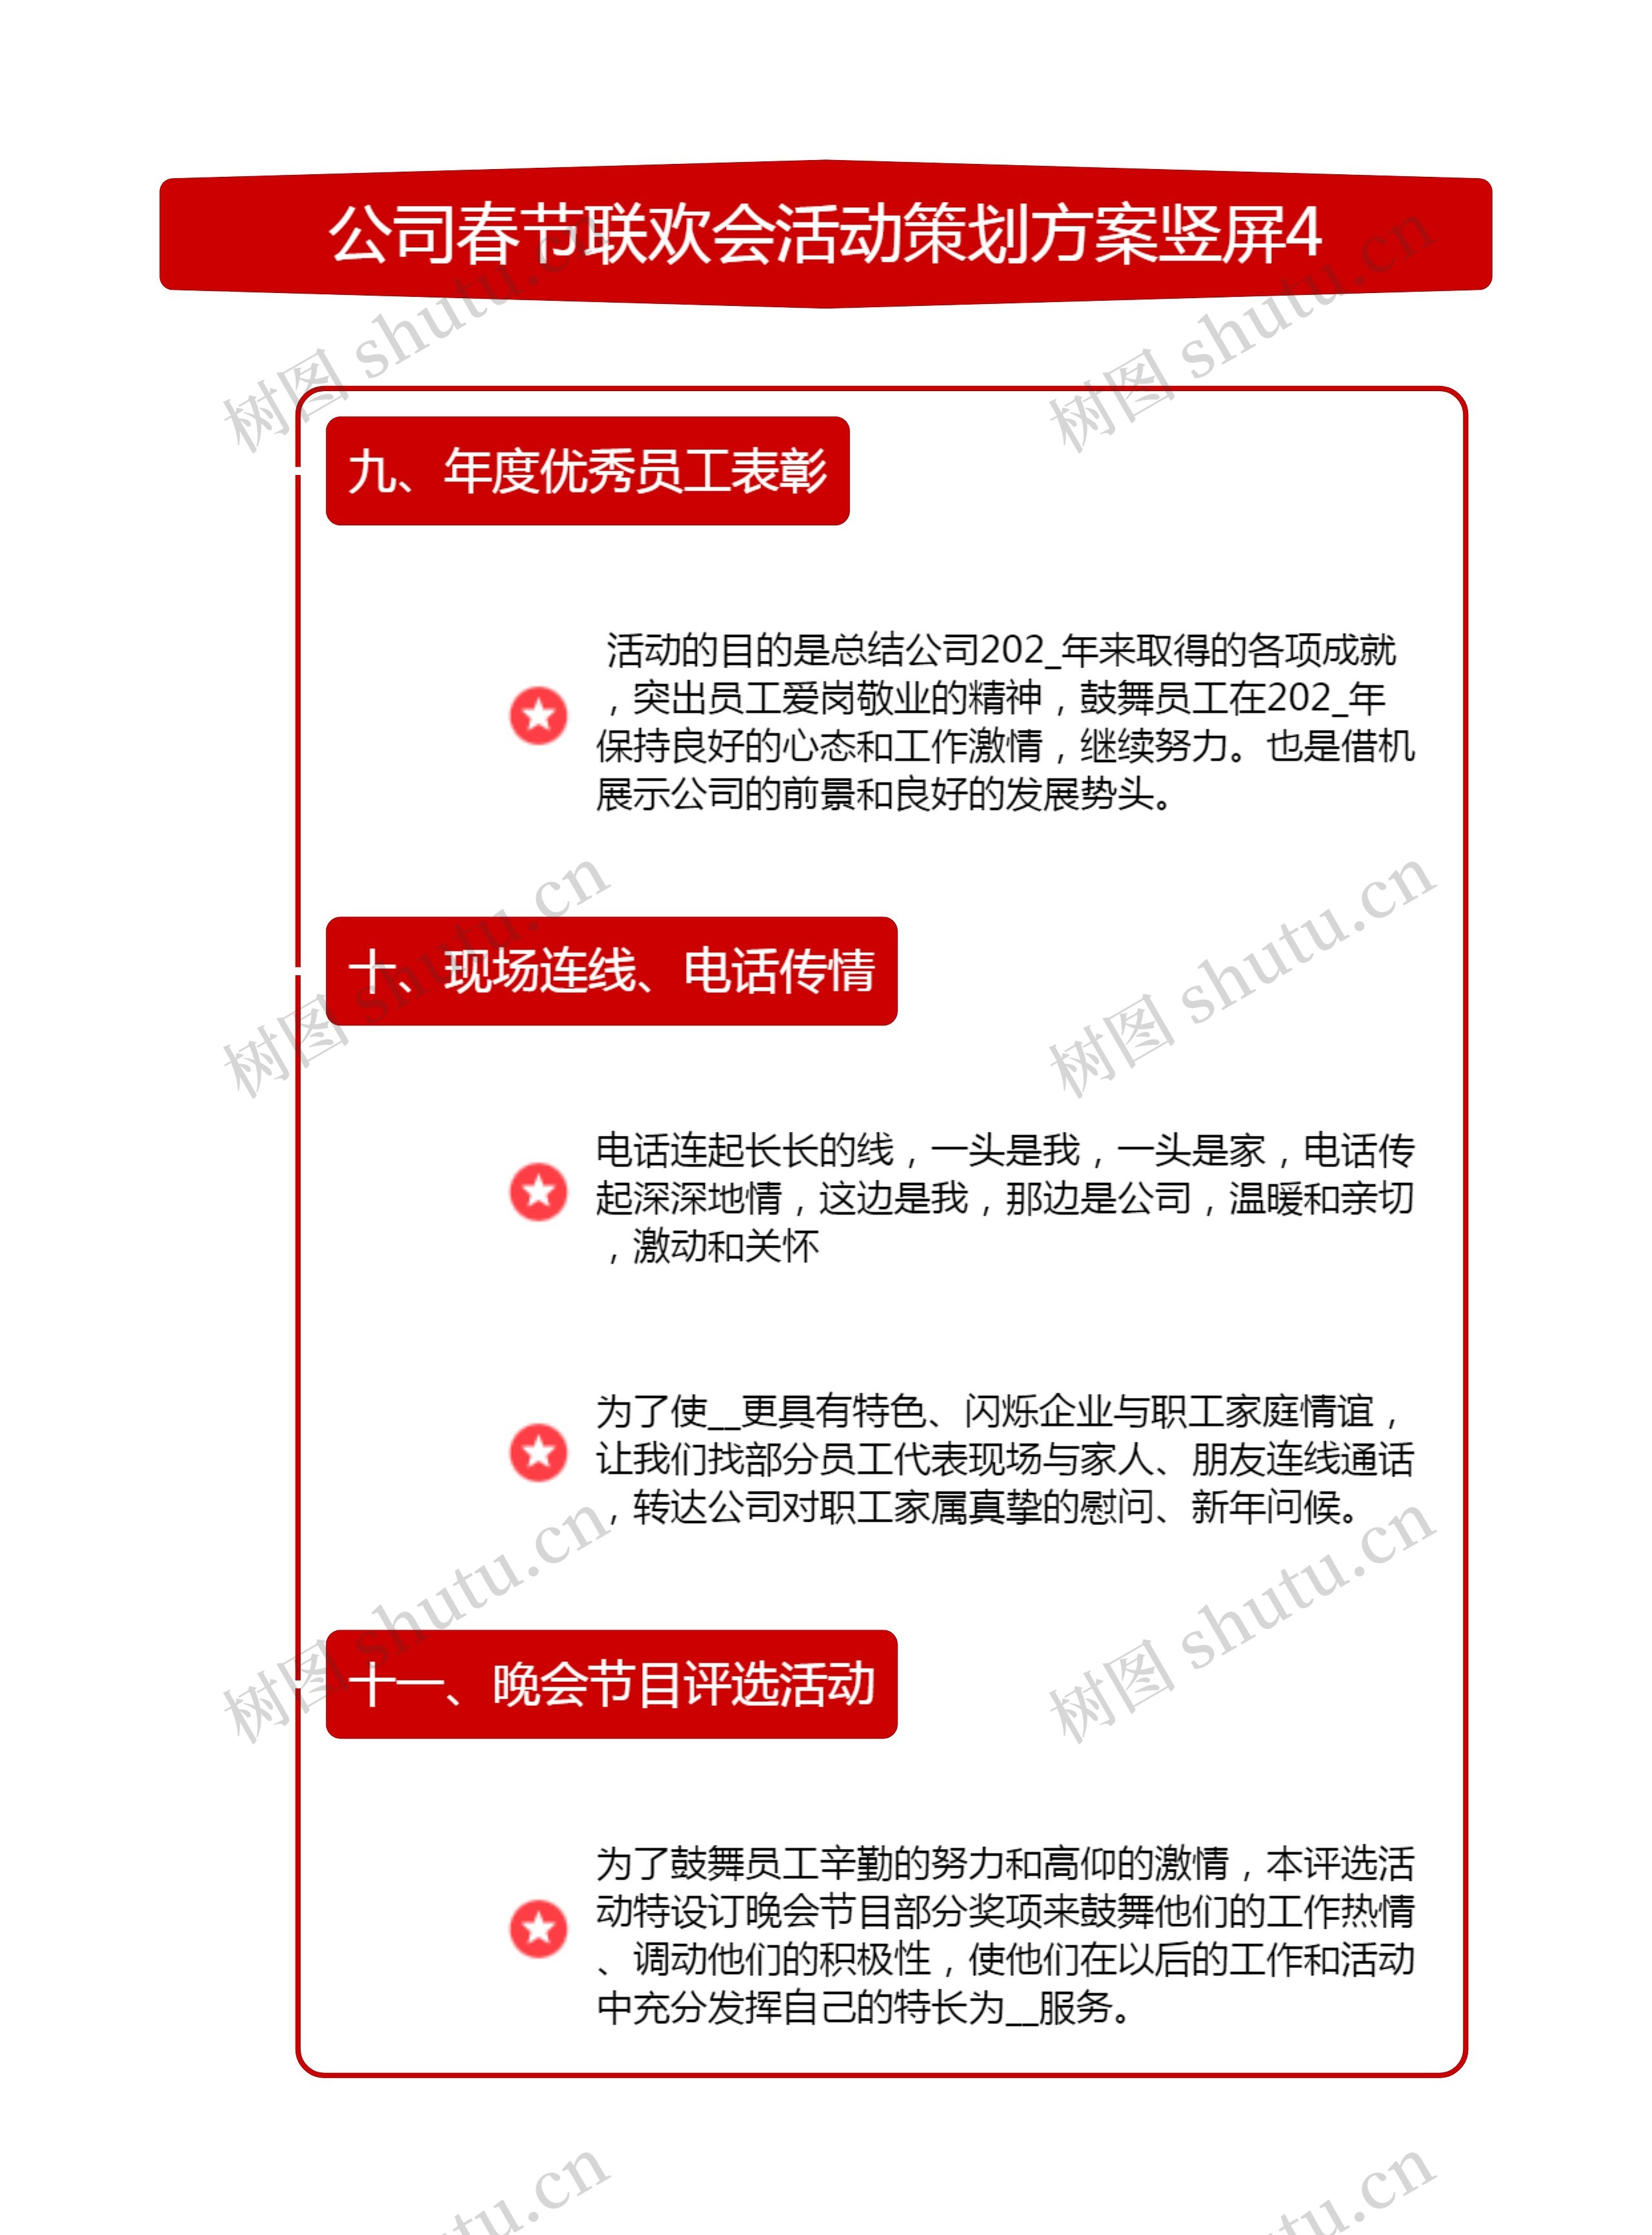 公司春节联欢会活动策划方案竖屏4思维导图